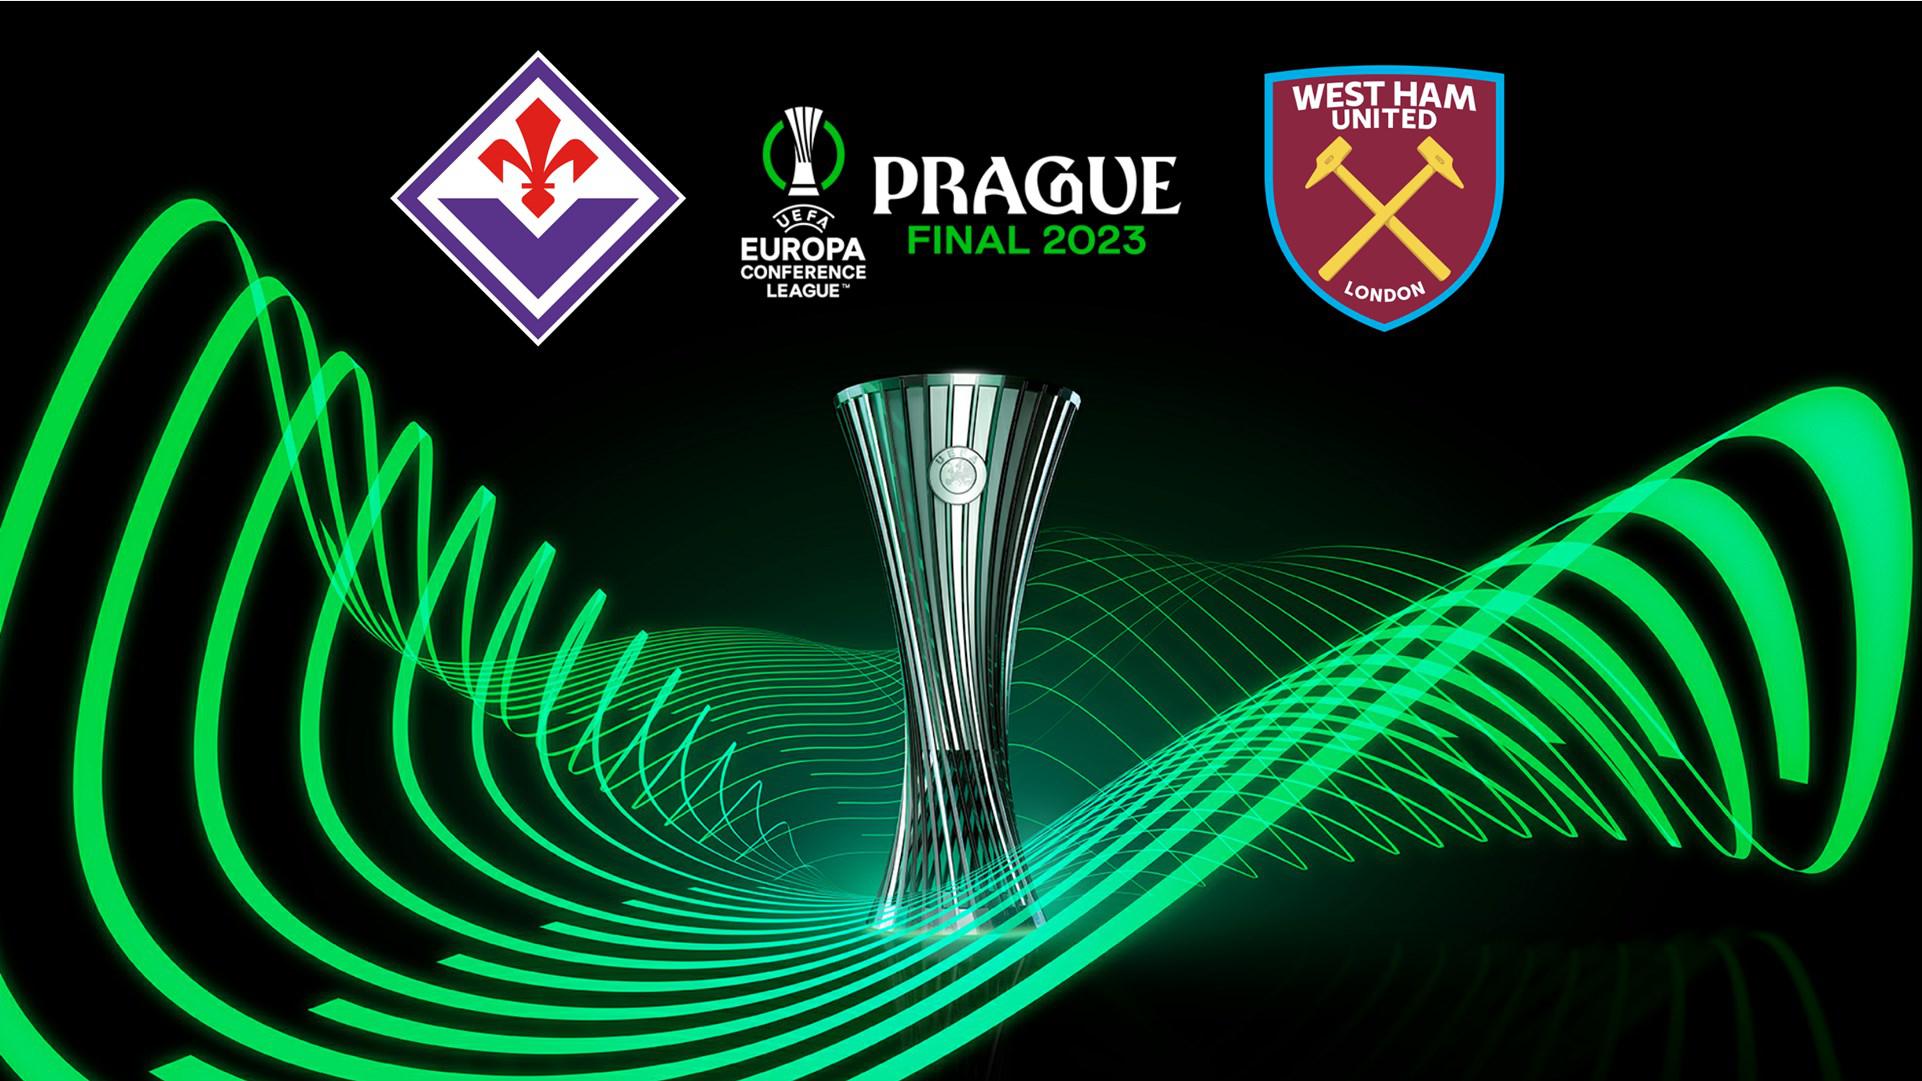 Fiorentina - West Ham, alle 21 la finale di Conference League: ecco dove vederla in streaming gratis